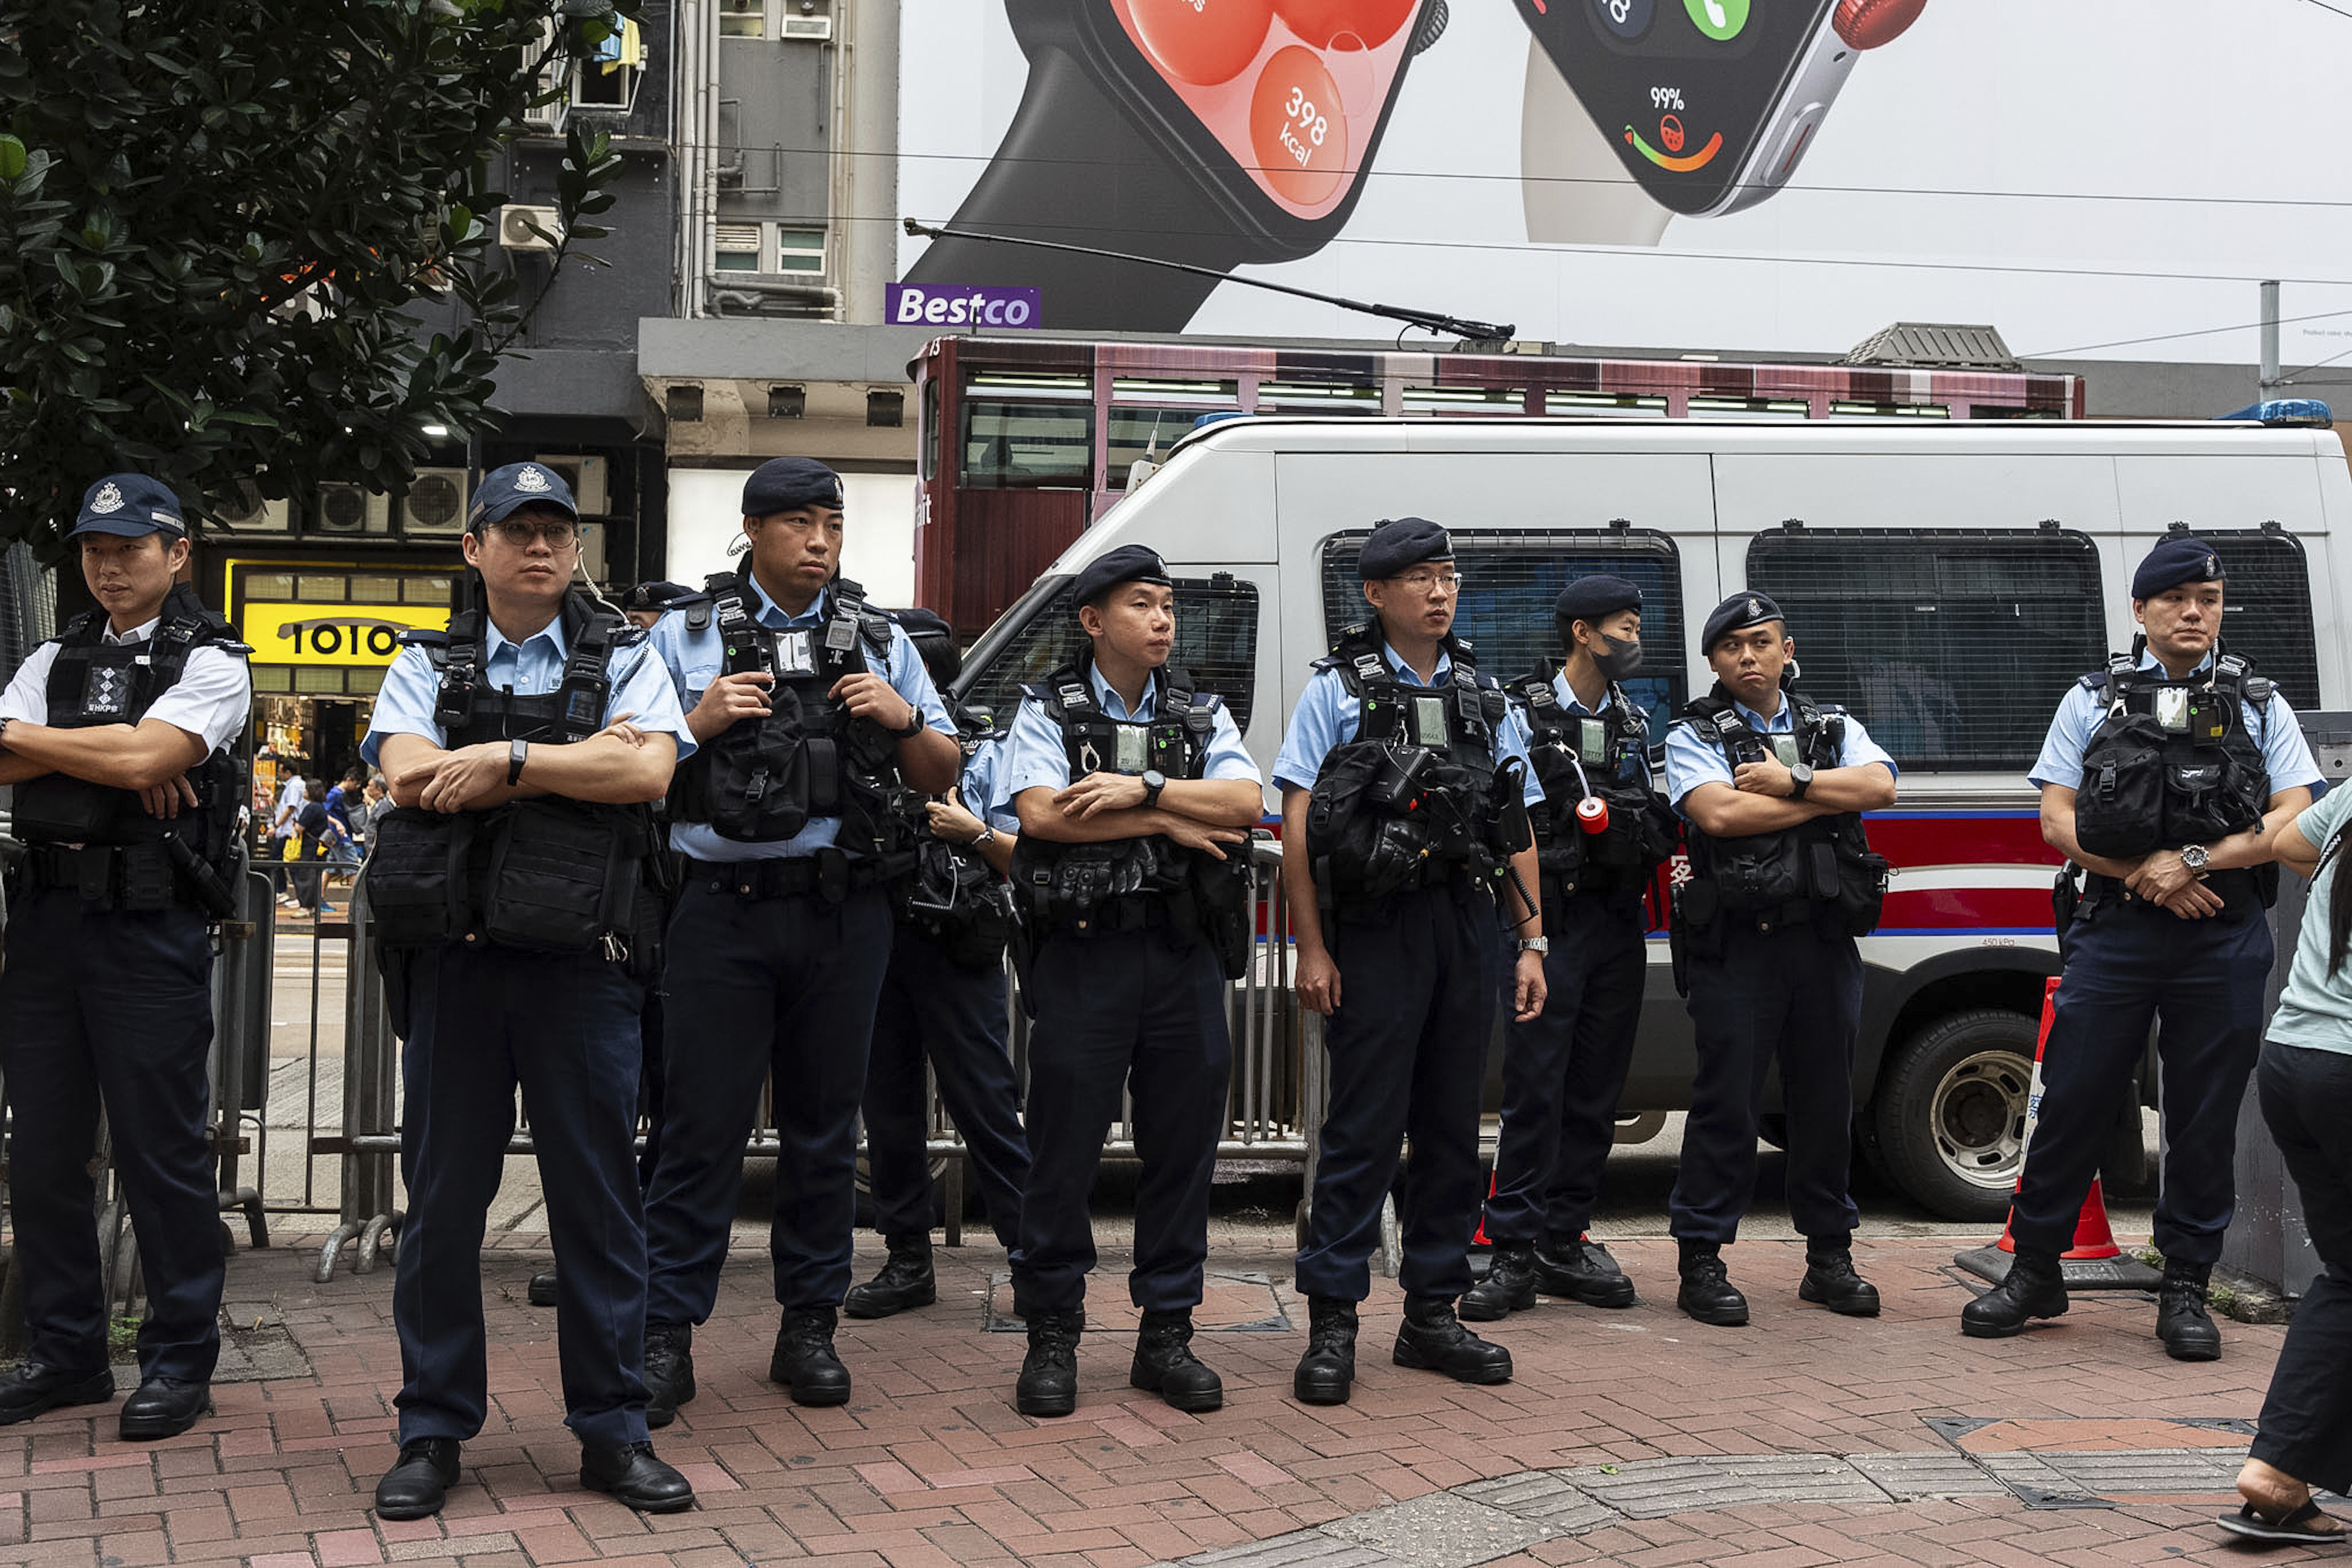 Επίθεση με μαχαίρι δέχθηκαν στην Κίνα αμερικανοί καθηγητές πανεπιστημίου &#8211; Μεμονωμένο περιστατικό, λένε οι Αρχές